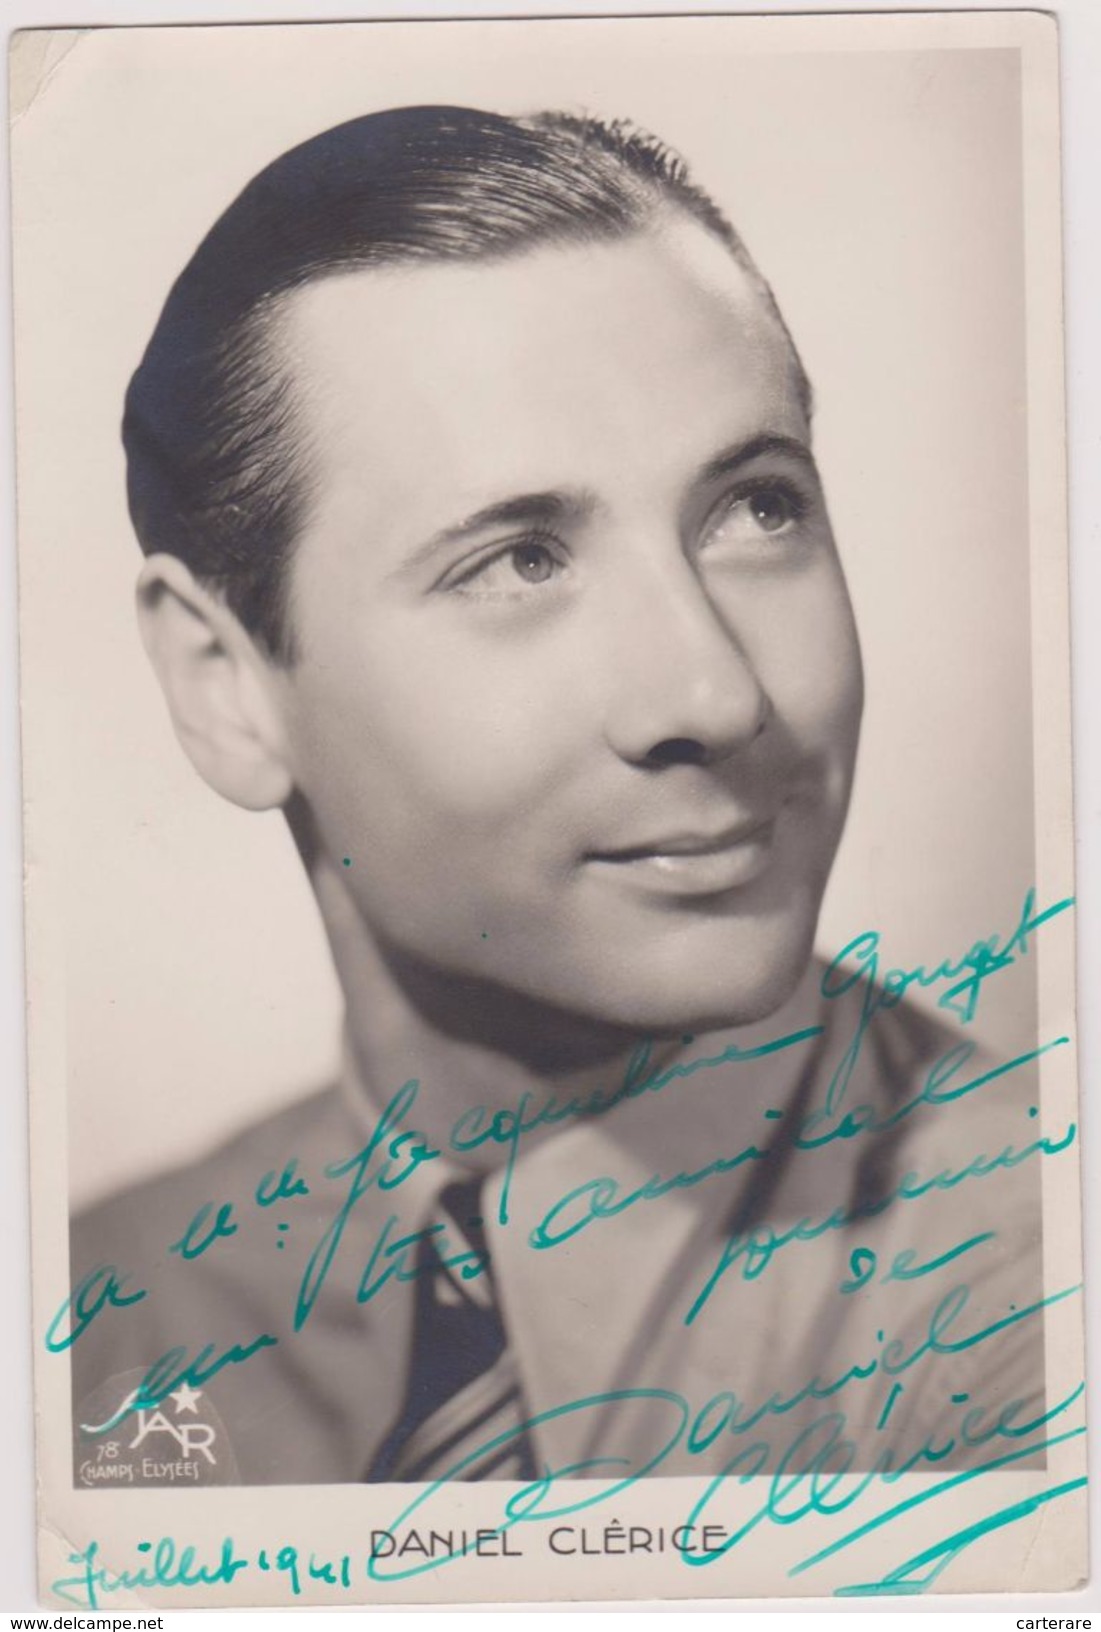 CARTE PHOTO D´ARTISTE,DANIEL CLERICE,1941,DEDICACE,SYGNATURE,AUTOGRAPHE,ACTEUR FRANCAIS,né à PARIS ,mort à BORDEAUX - Artisti